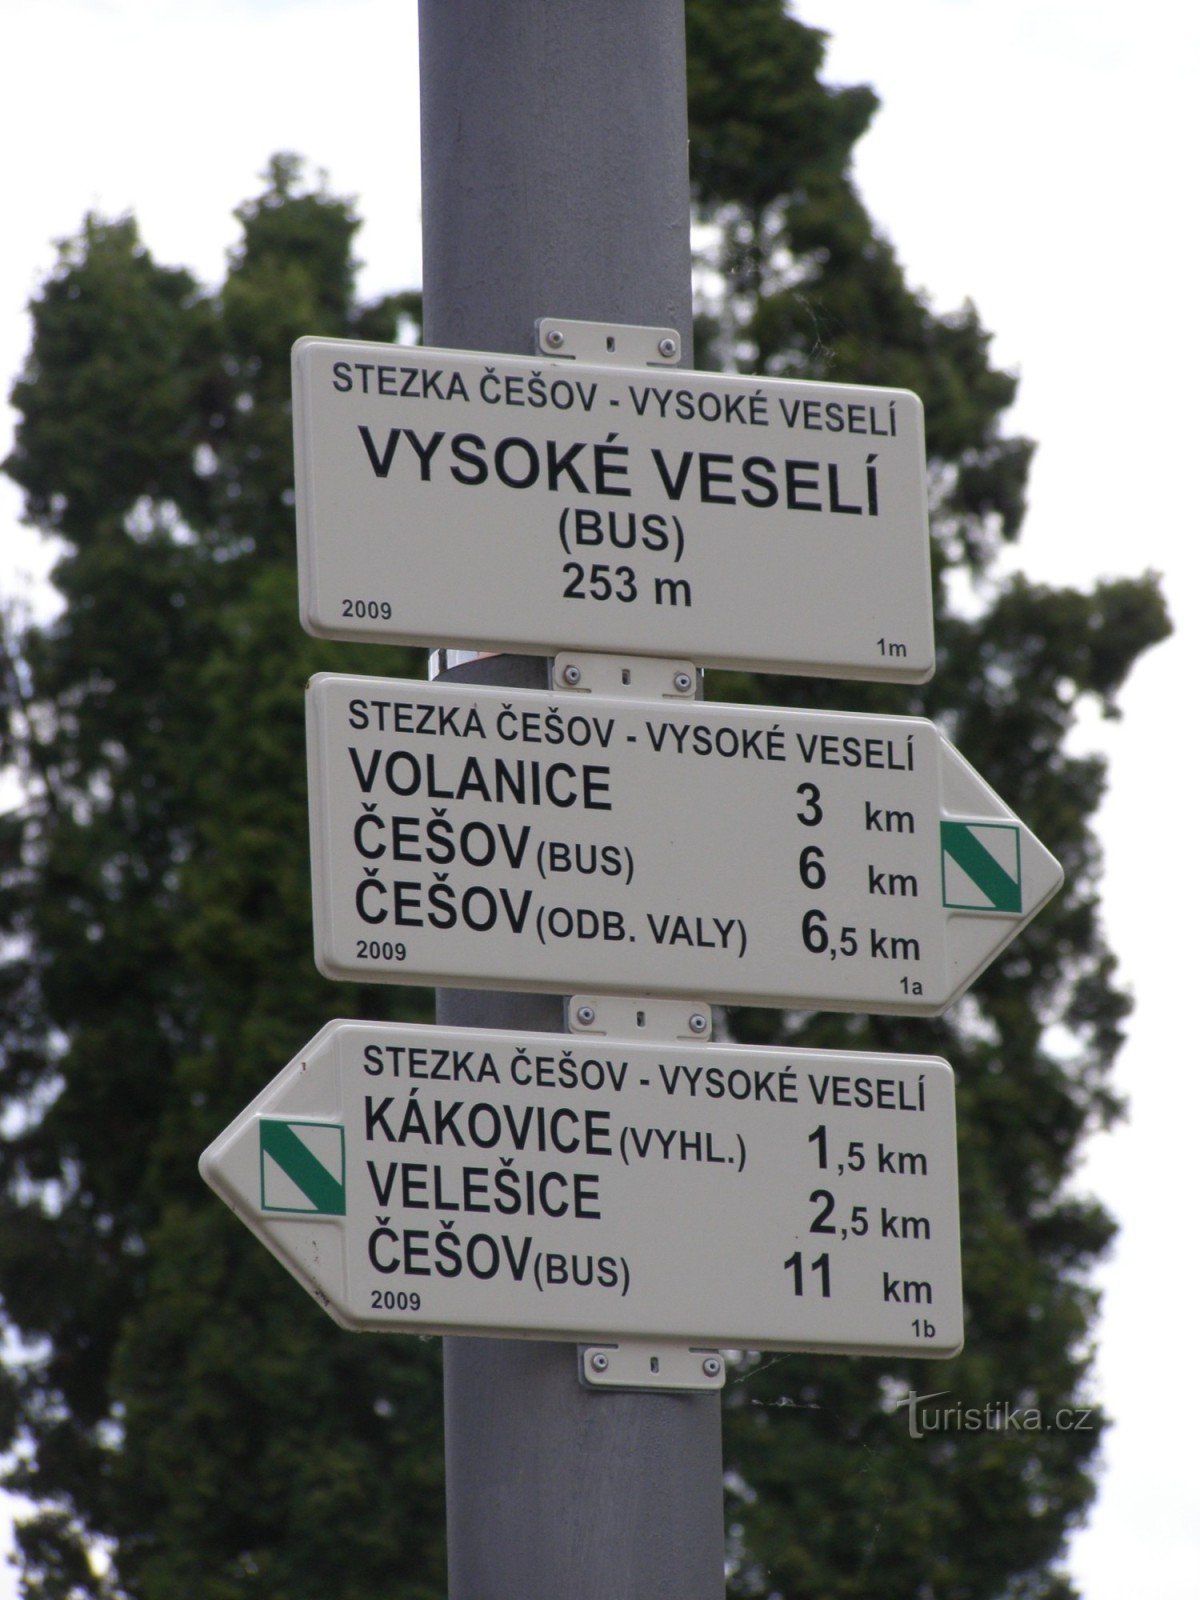 NS Češov-Vysoké Veselí - Vysoké Veselí -bussin ylitys